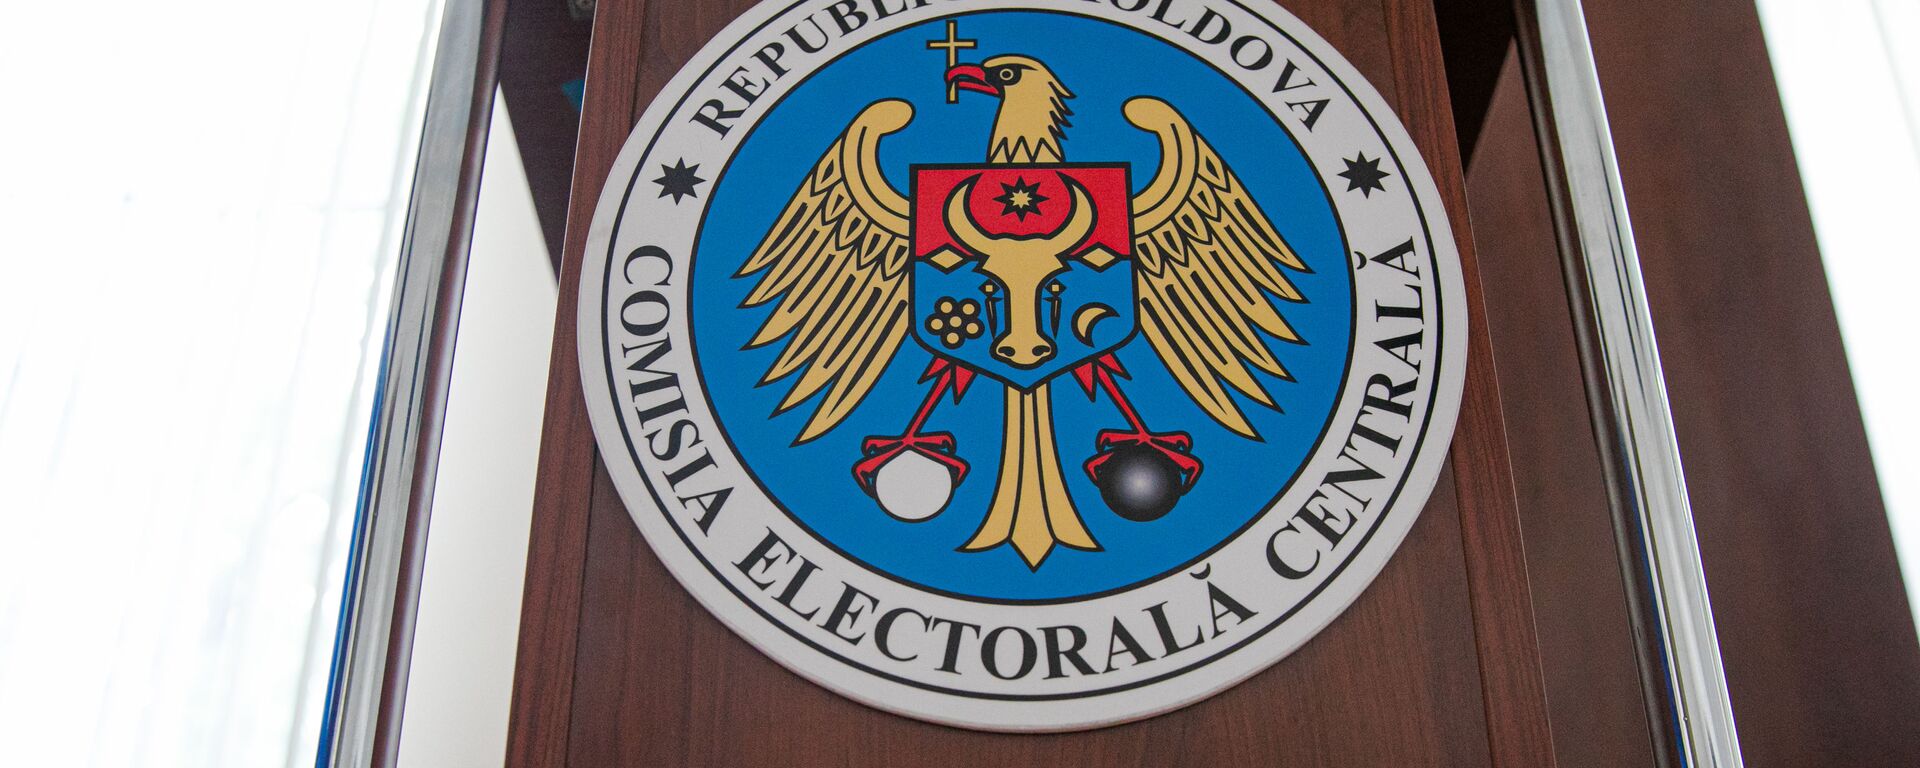 Центральная избирательная комиссия Молдовы - Sputnik Молдова, 1920, 17.09.2021